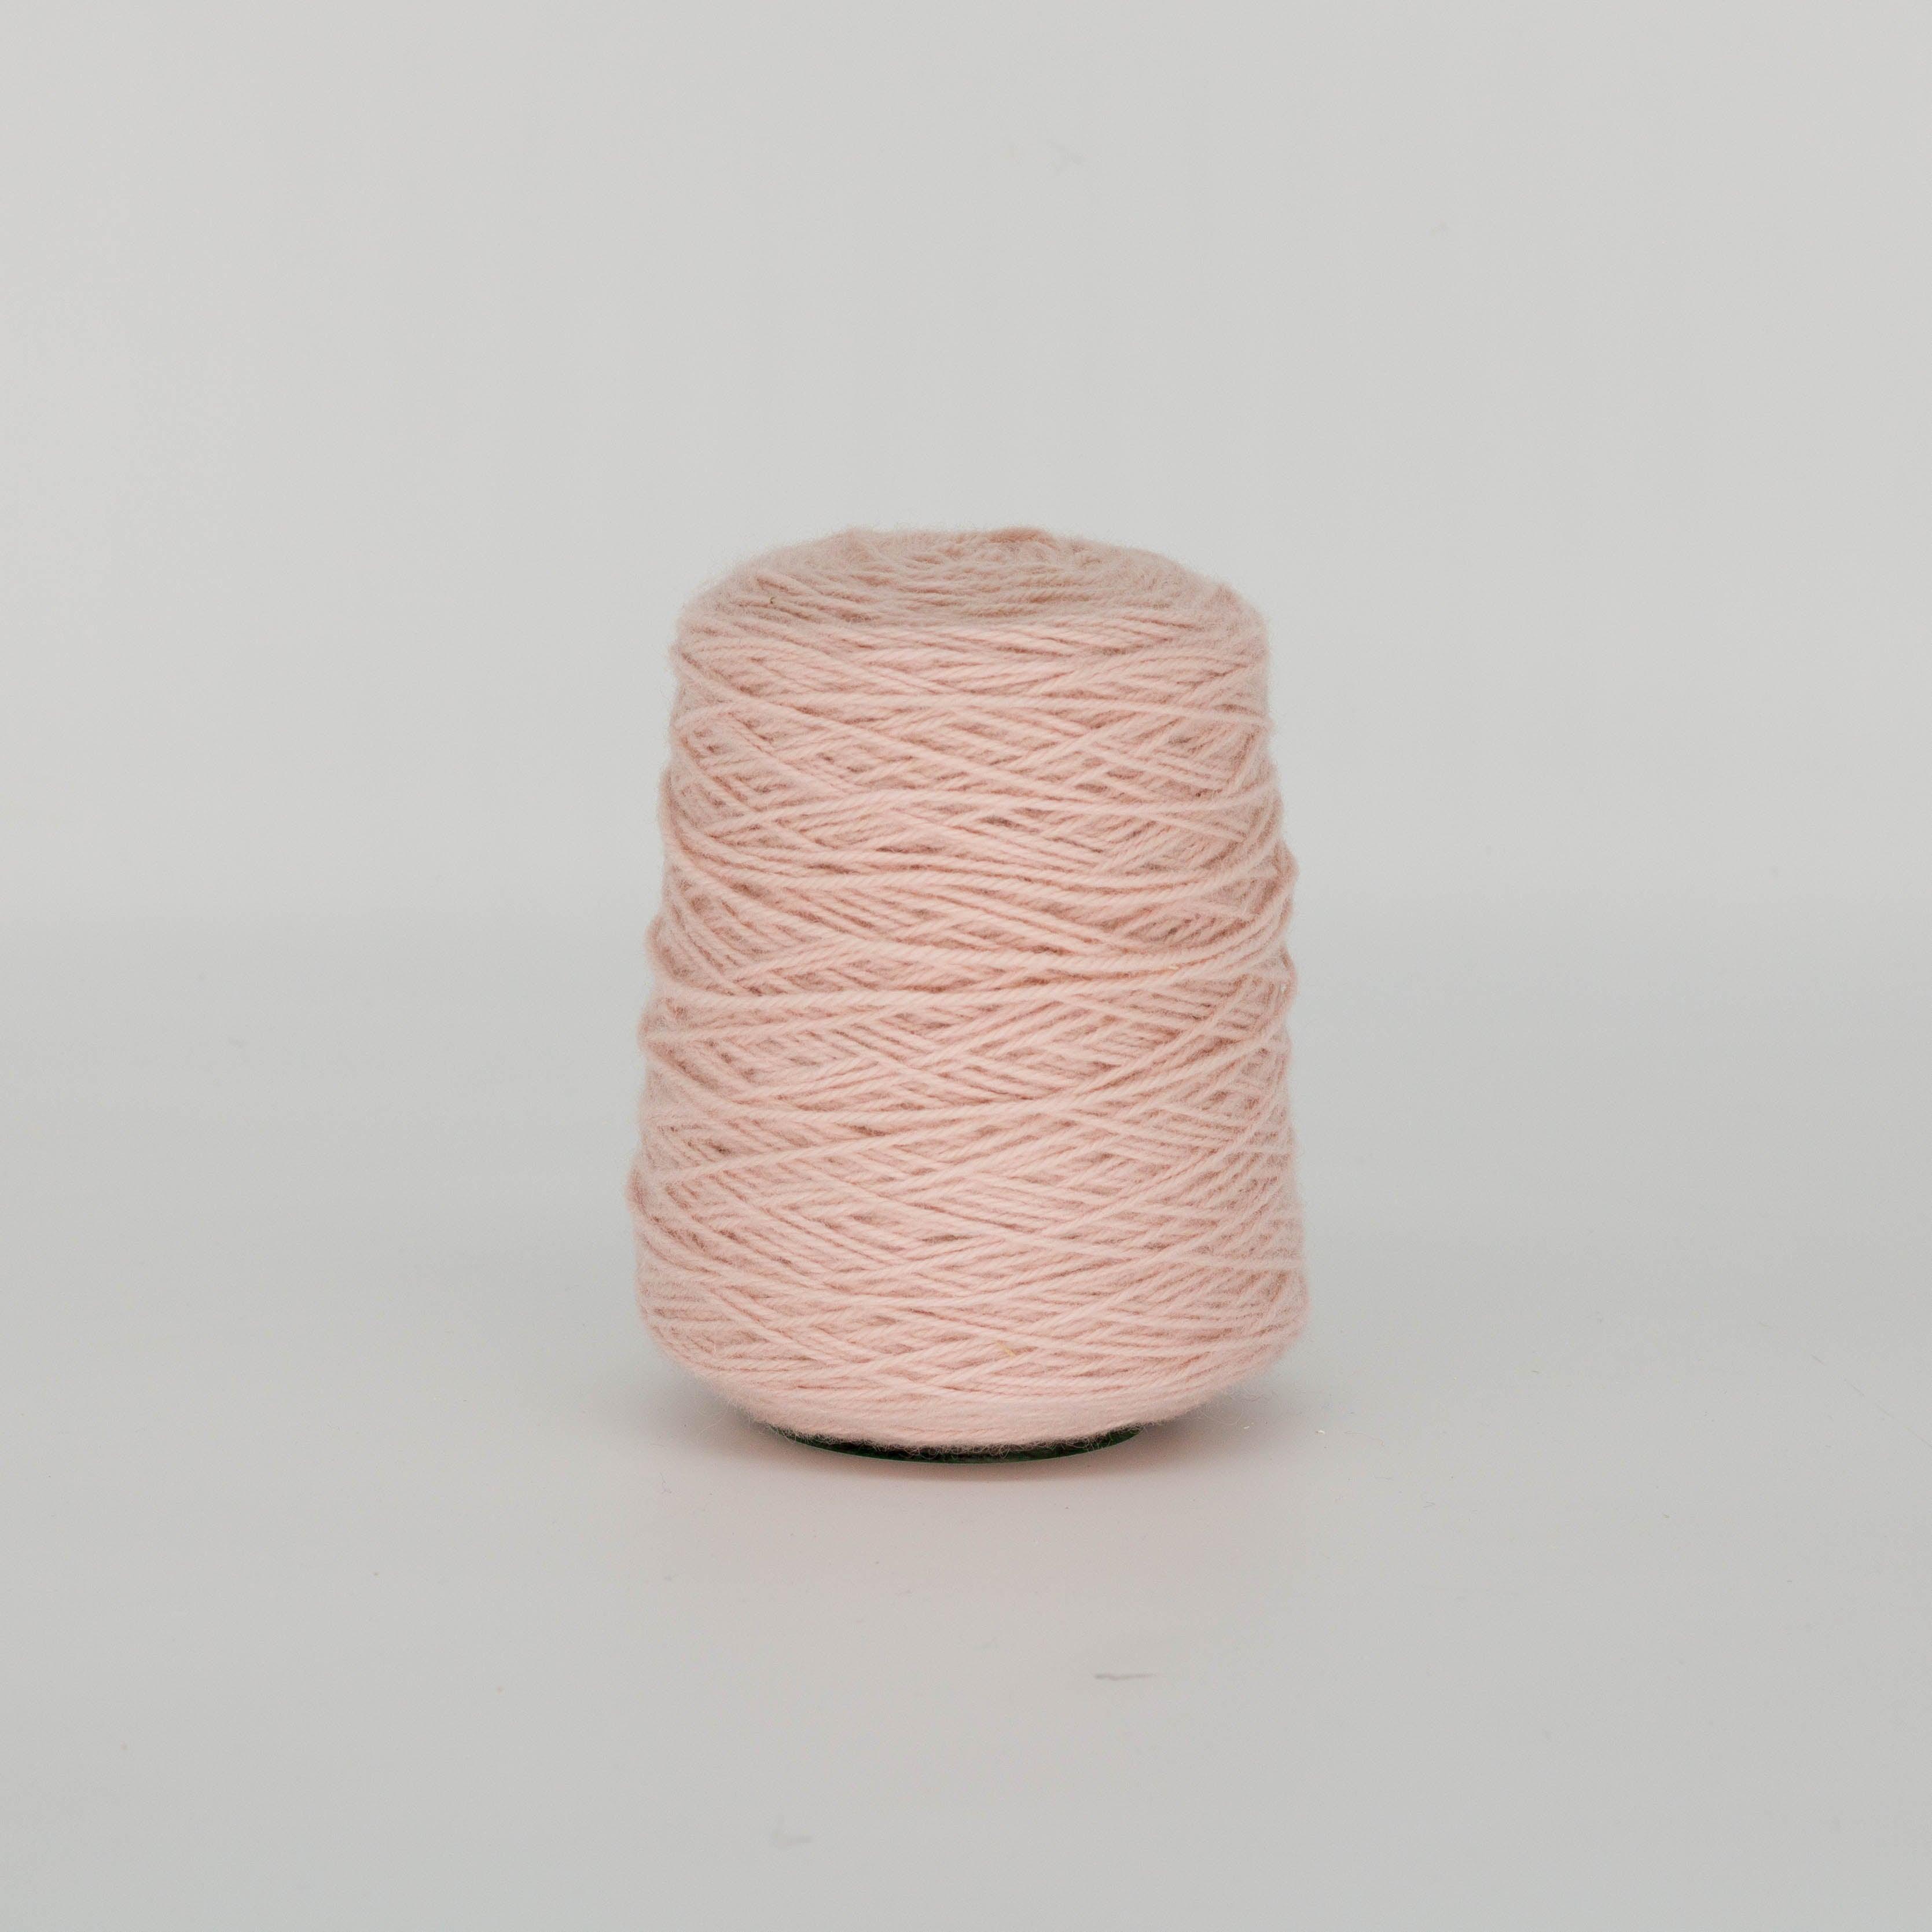 Pale ivory100% Wool Rug Yarn On Cones (499) - Tuftingshop